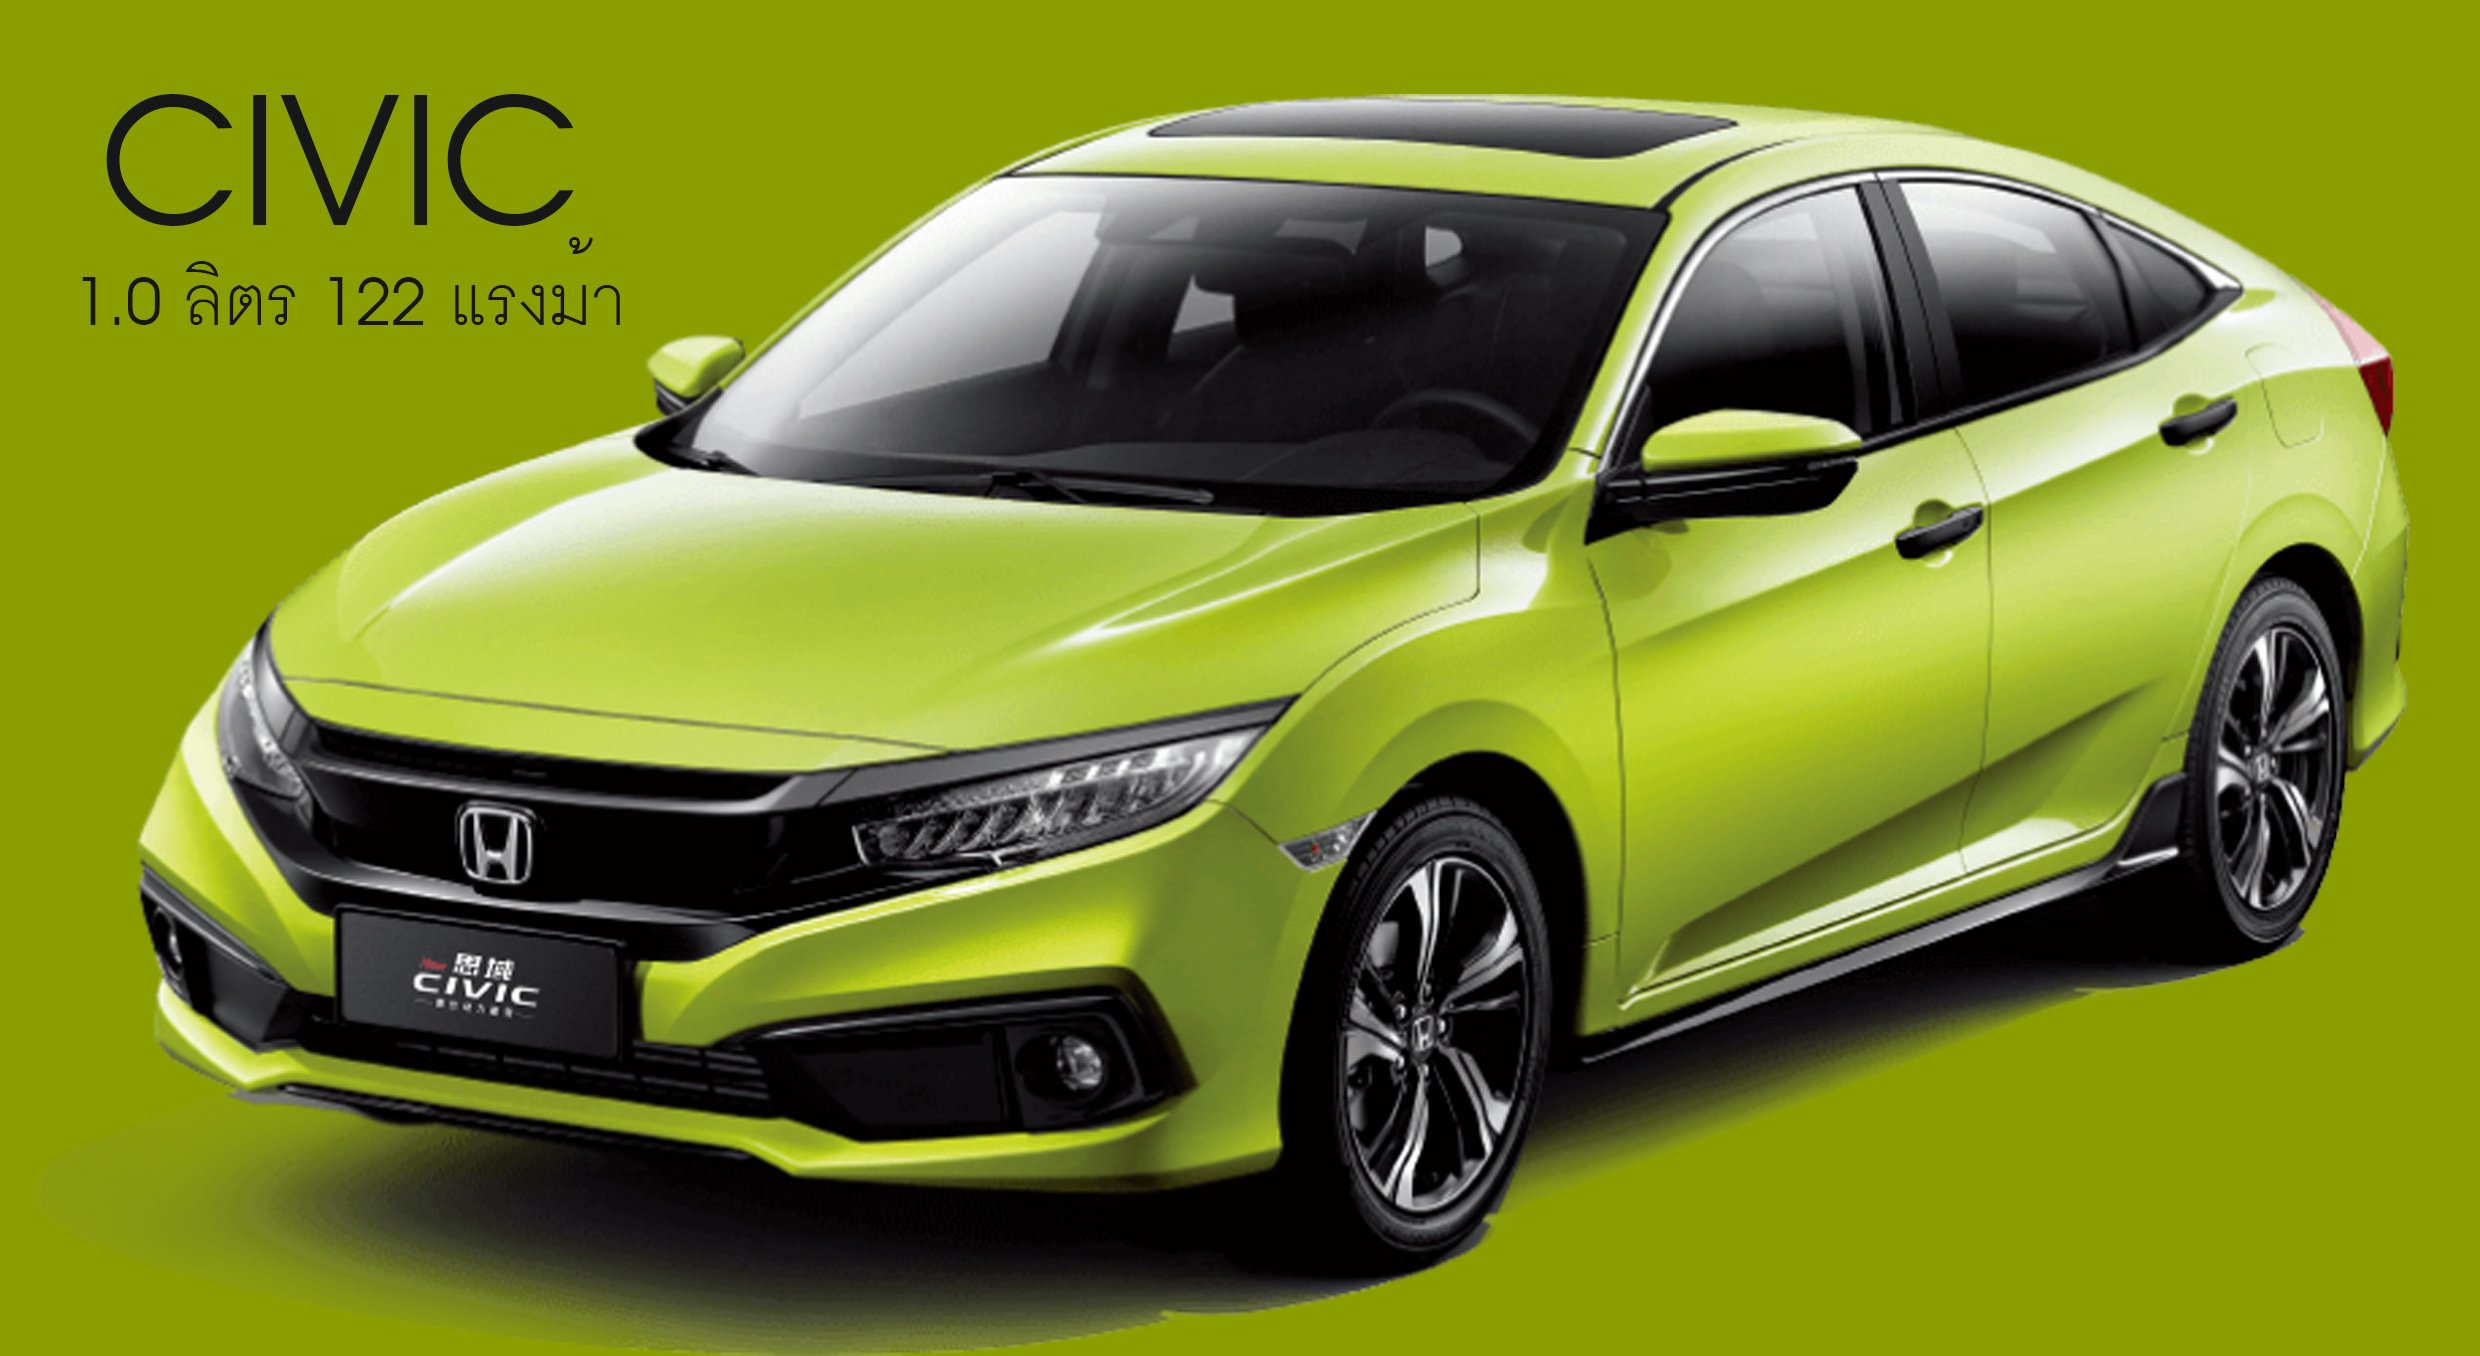 Honda Civic 2019 ในจีน + เบนซินเทอร์โบ 1.0 ลิตร 122​ แรงม้า